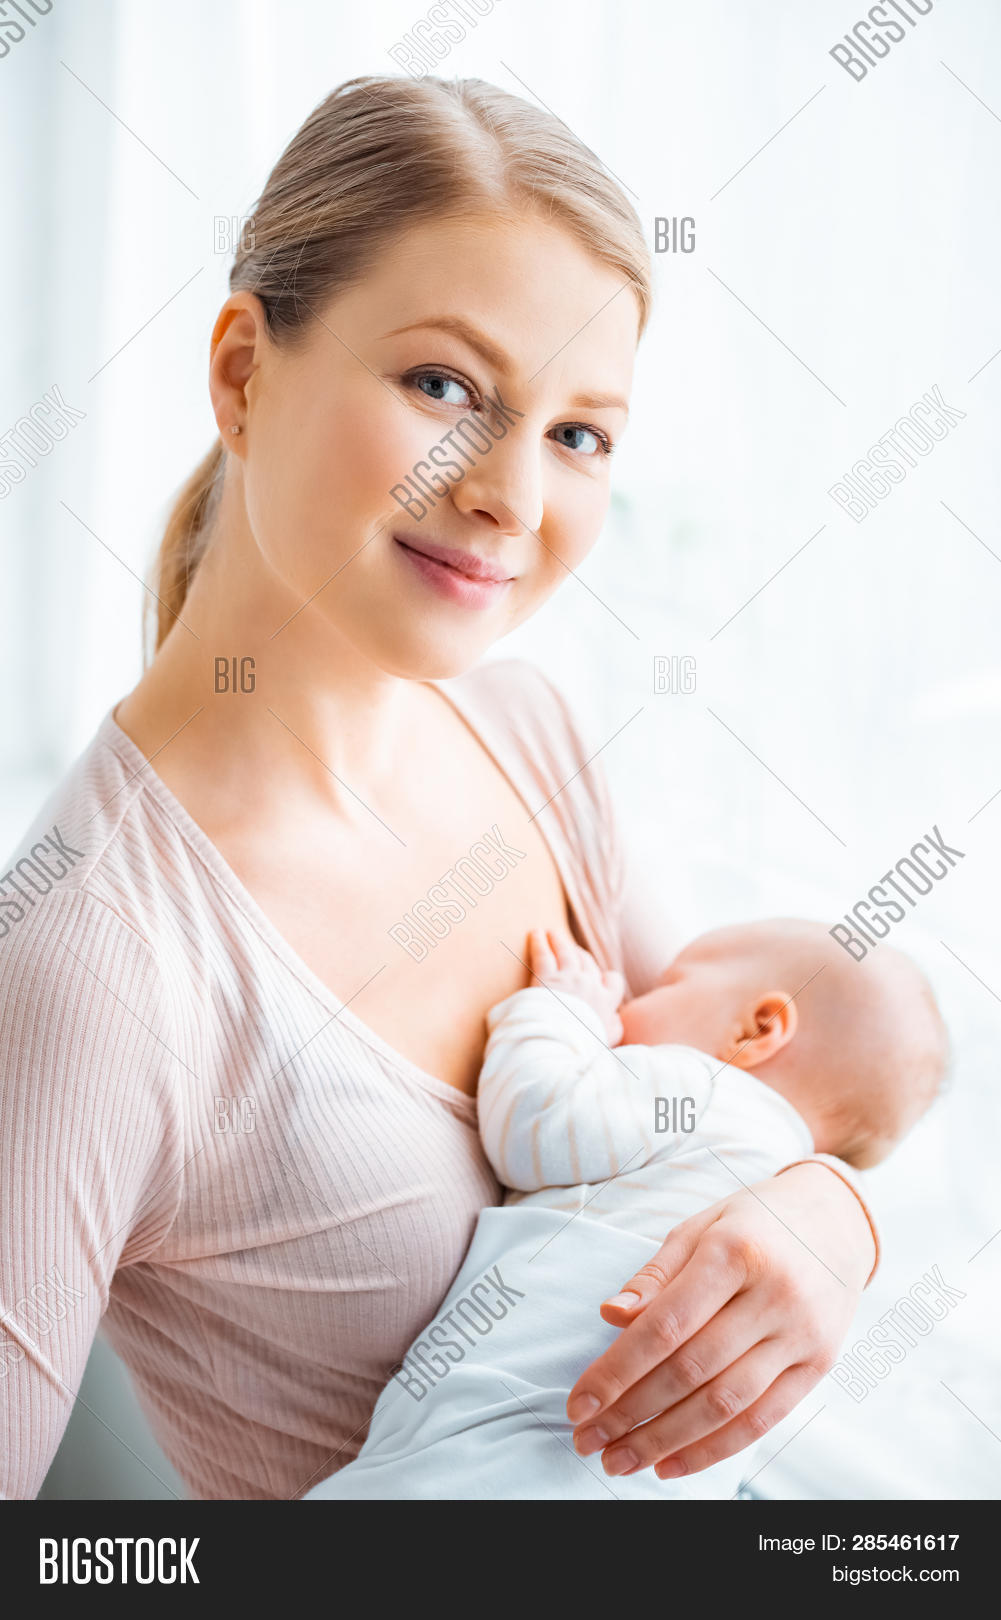 Dl breastfeeding ab mommy